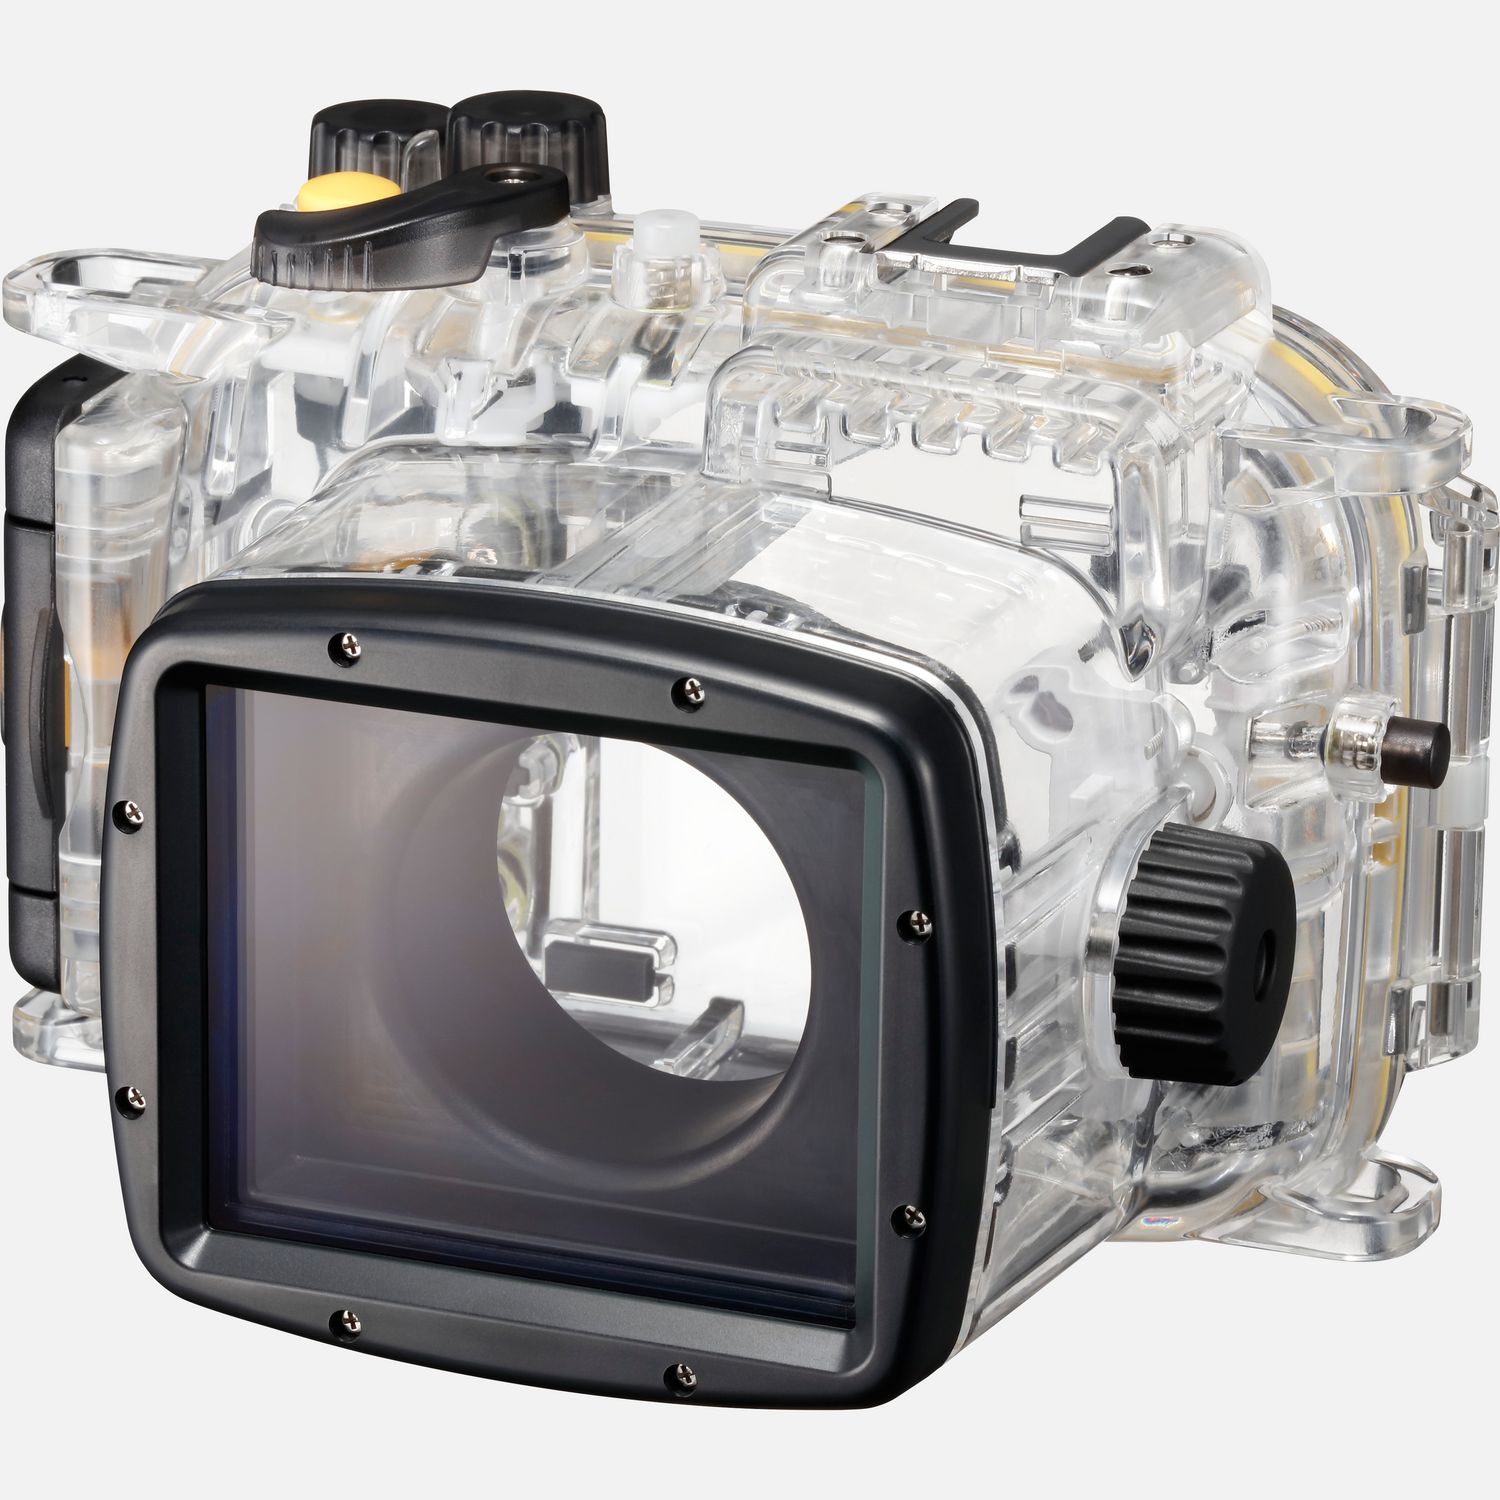 Perfekt zum Tauchen und Schnorcheln mit deiner kompatiblen PowerShot Kamera  mit diesem Unterwassergehuse kannst du mit der Kamera bis zu 40 Meter tief tauchen. Bei vollem Zugang zu den Kamerafunktionen ist dieses Unterwassergehuse aus robustem Polykarbonat ideal zum Schnorcheln und Tauchen mit der Kamera.  Vorteile      Fotografiere mit deiner PowerShot G7 X Mark II in Wassertiefen von bis zu 40 Metern.          Das Gehuse bietet einen Zubehrschuh fr passende Zubehrteile und ermglicht das volle Ausfahren des Zooms          Zugang zu allen Kamerafunktionen          Hergestellt aus transparentem Polykarbonat          Lieferumfang       WP-DC55 Unterwassergehuse            Kompatibilitt       PowerShot G7 X Mark II